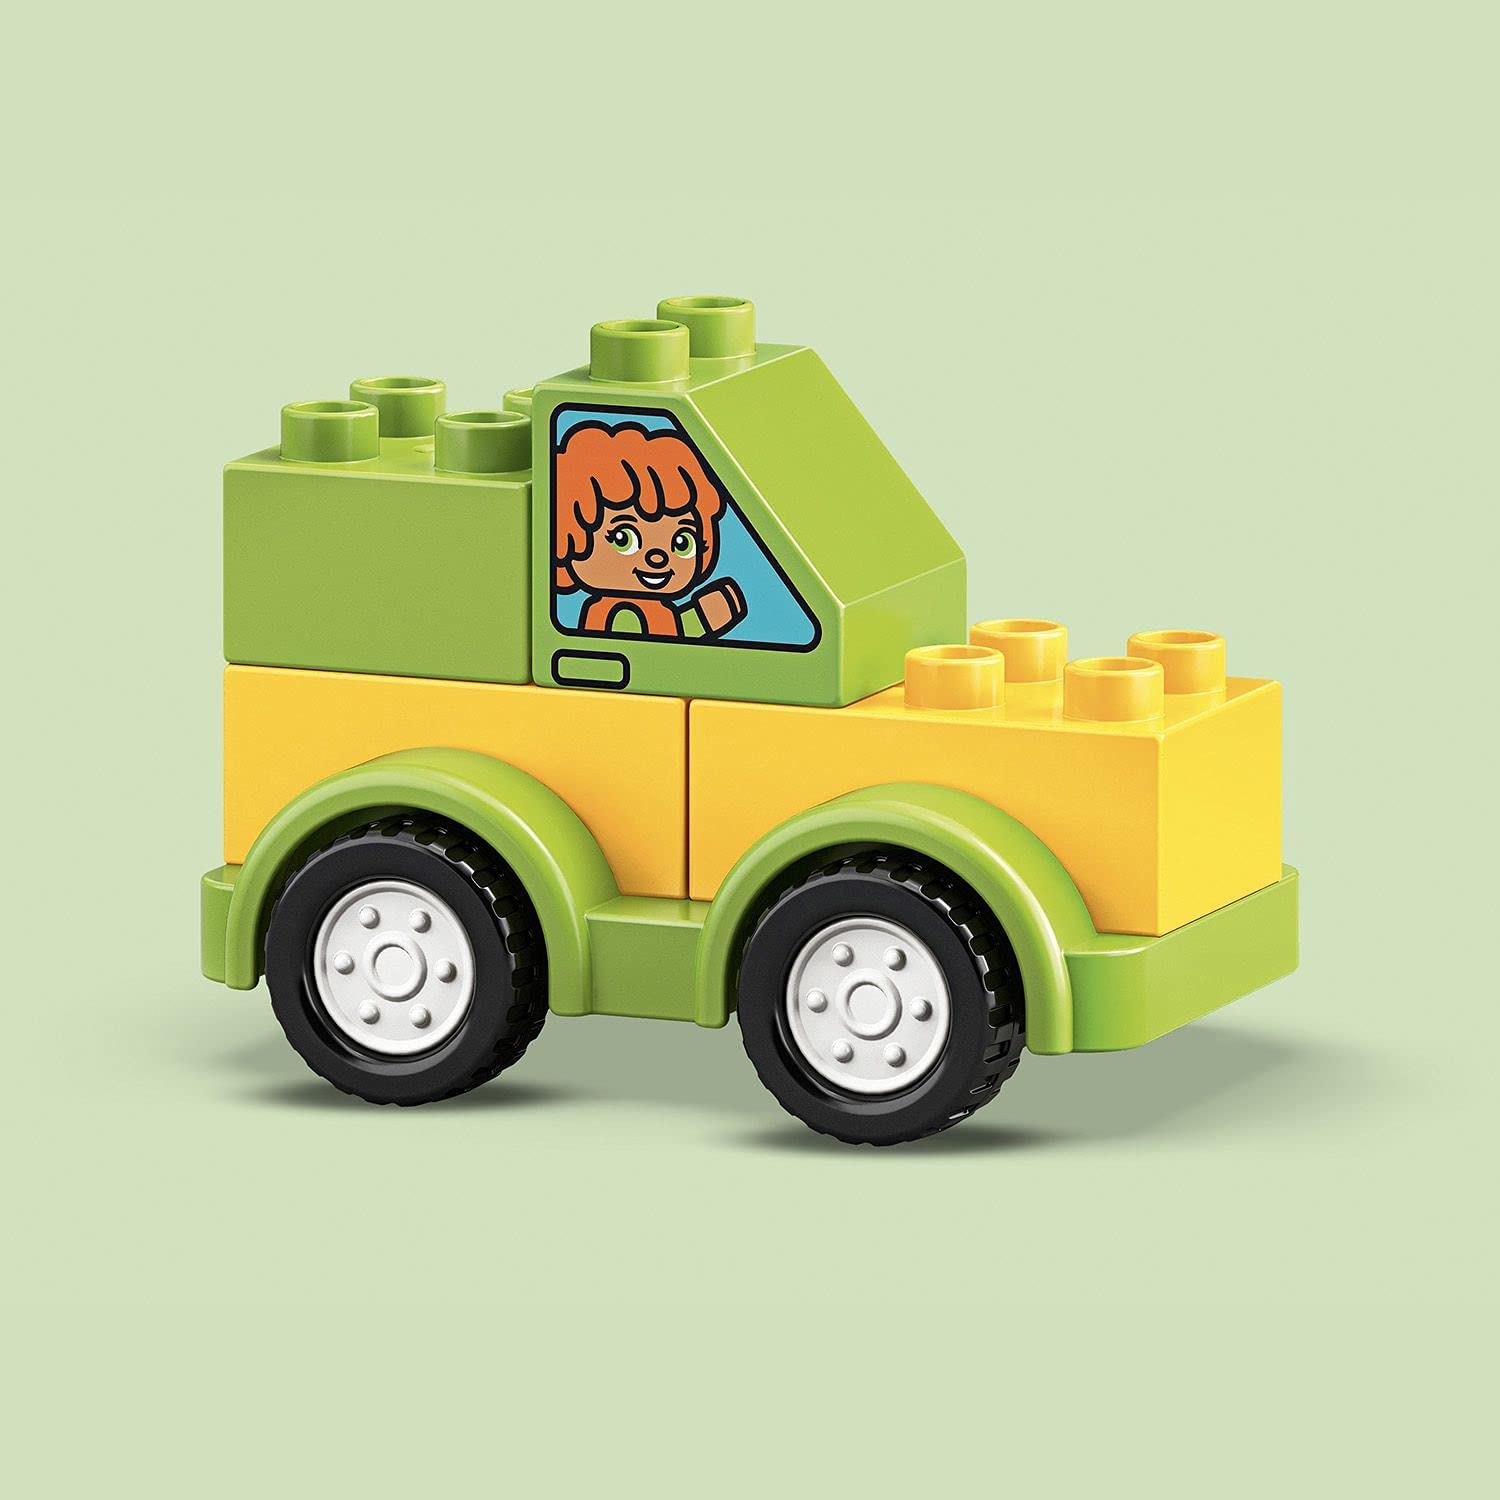 レゴ(LEGO)